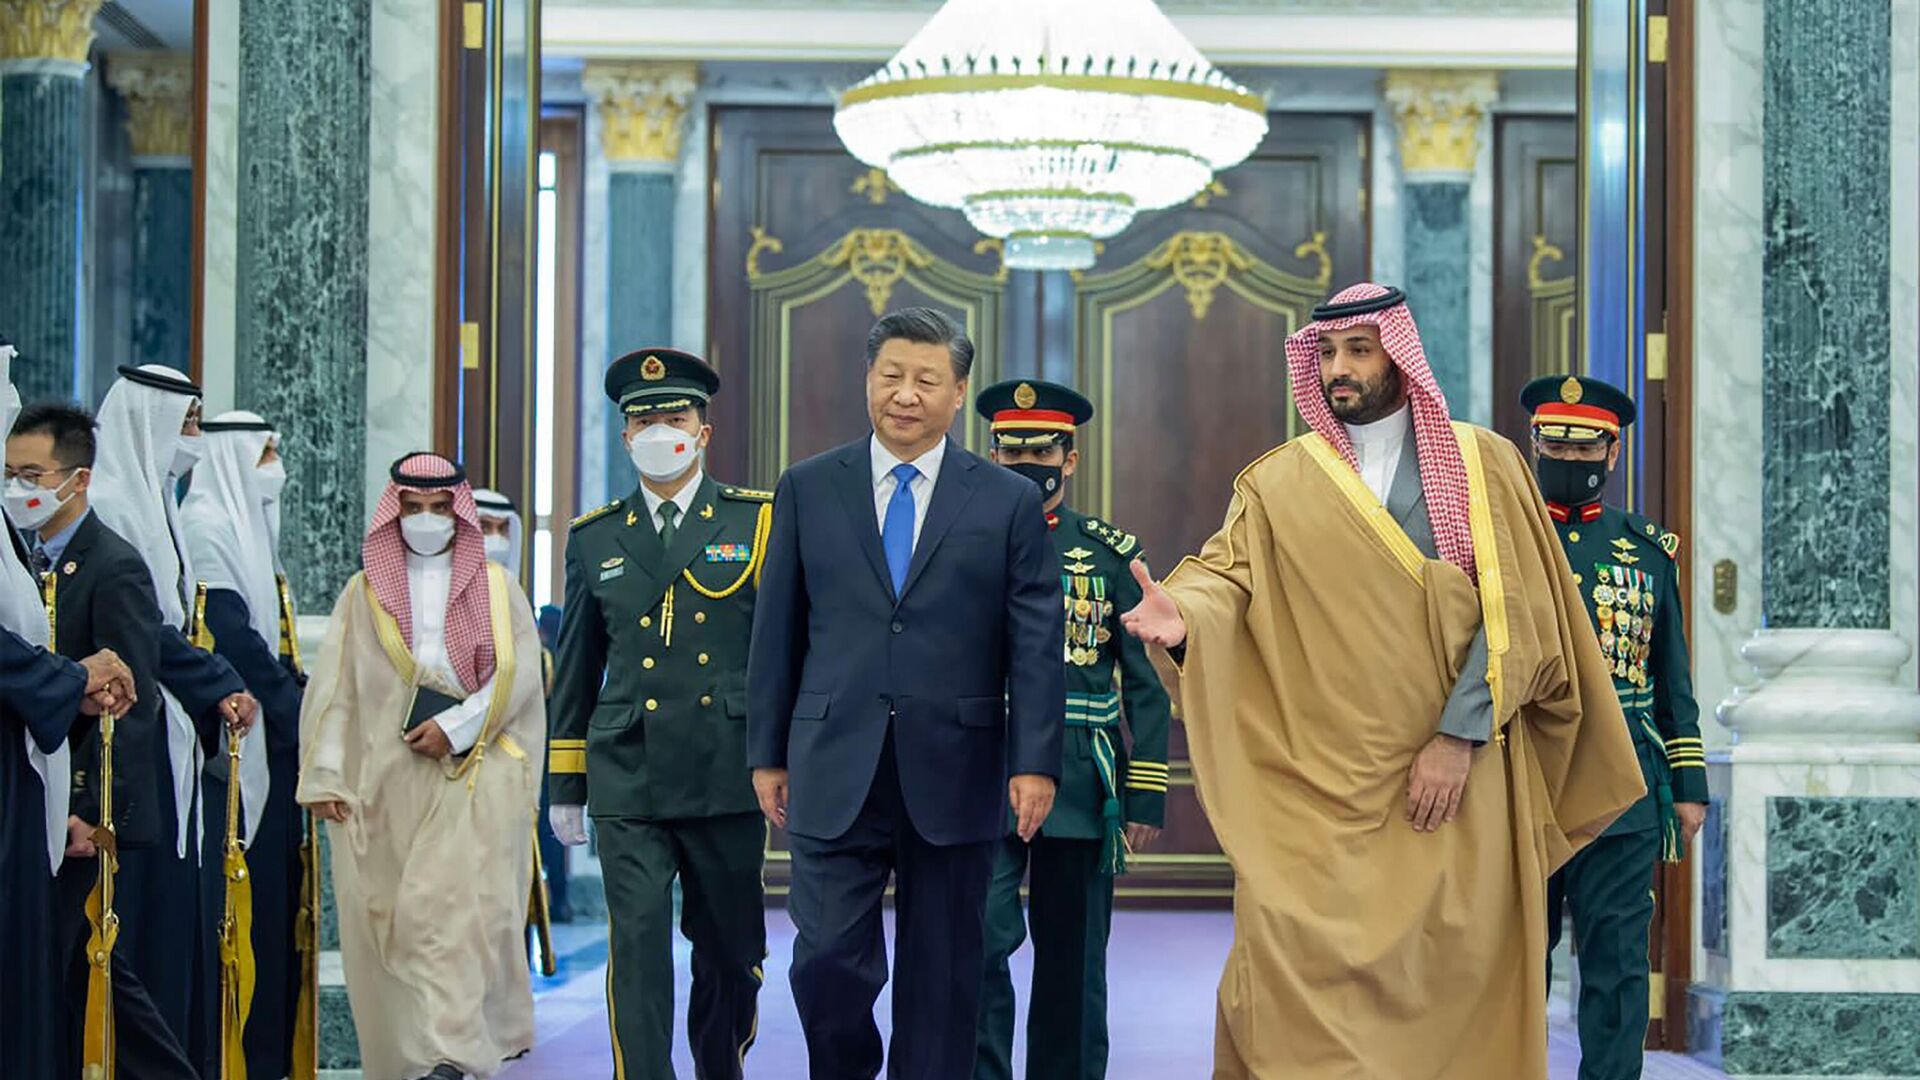 Председатель КНР Си Цзиньпин и наследный принц Саудовской Аравии Мухаммед бен Салман во время встречи в Эр-Рияде. 8 декабря 2022 года - ИноСМИ, 1920, 10.12.2022